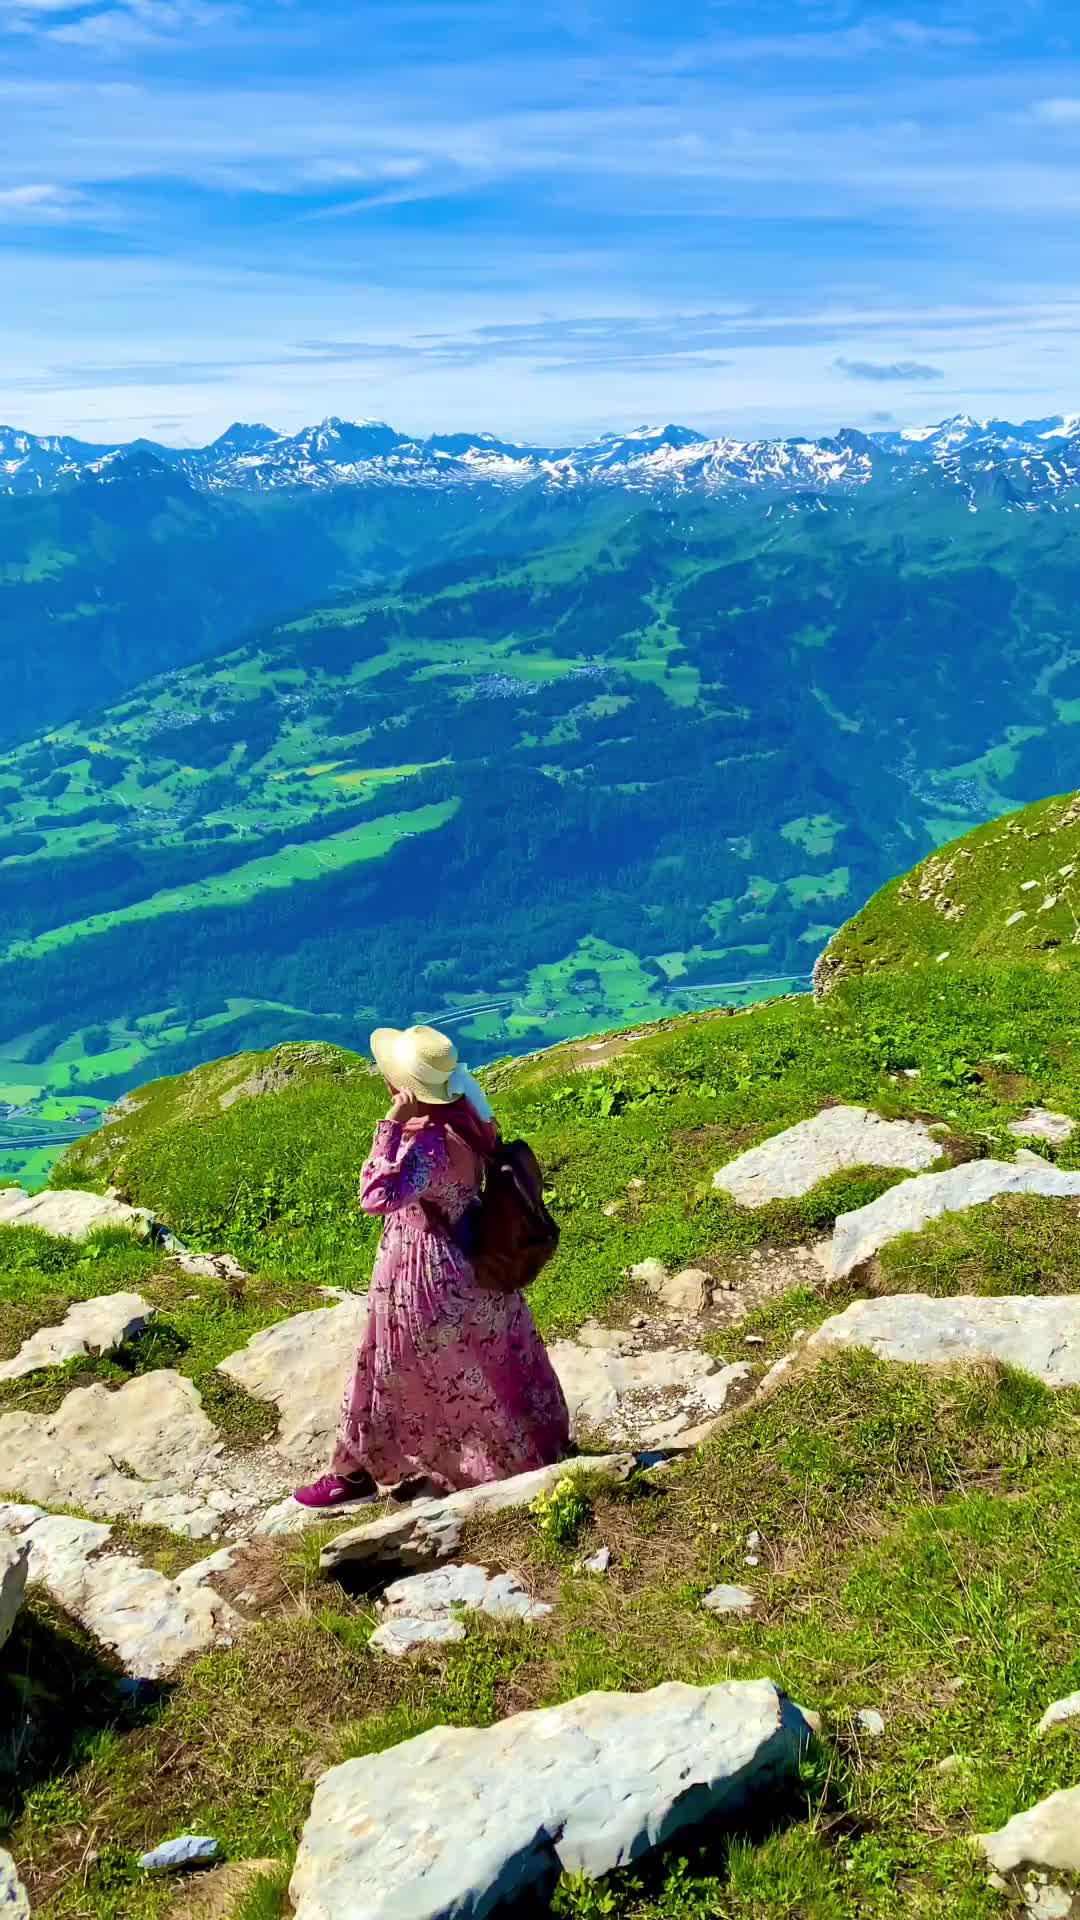 Discover Chäserrugg: A Stunning Swiss Mountain Peak